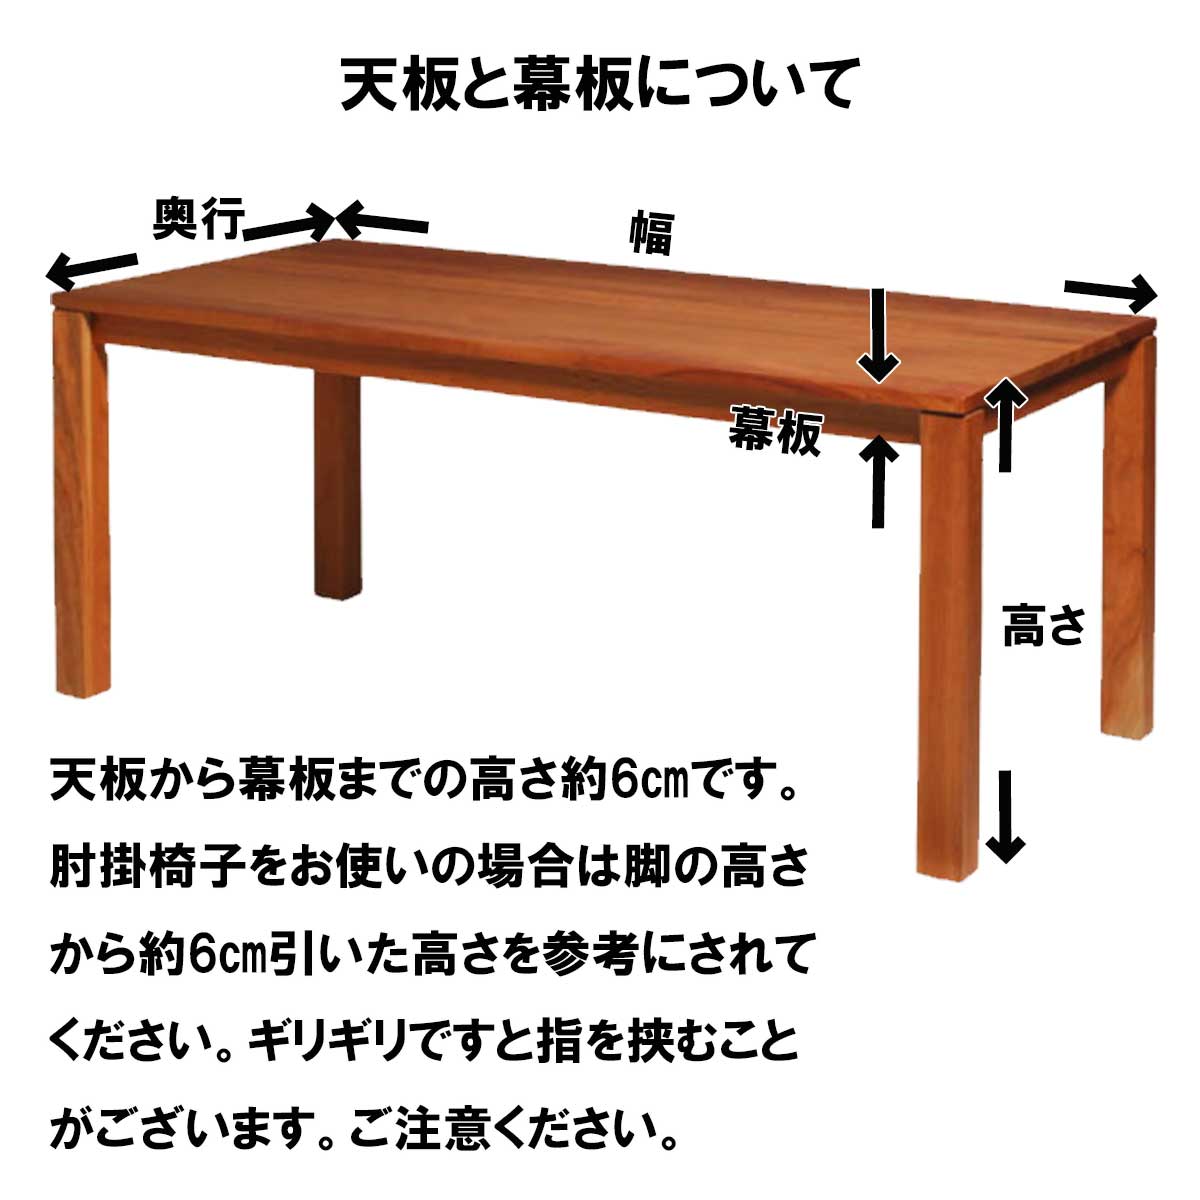 リーブス ダイニングテーブルブラックチェリー材は、69センチから75センチまでご指定可能です。